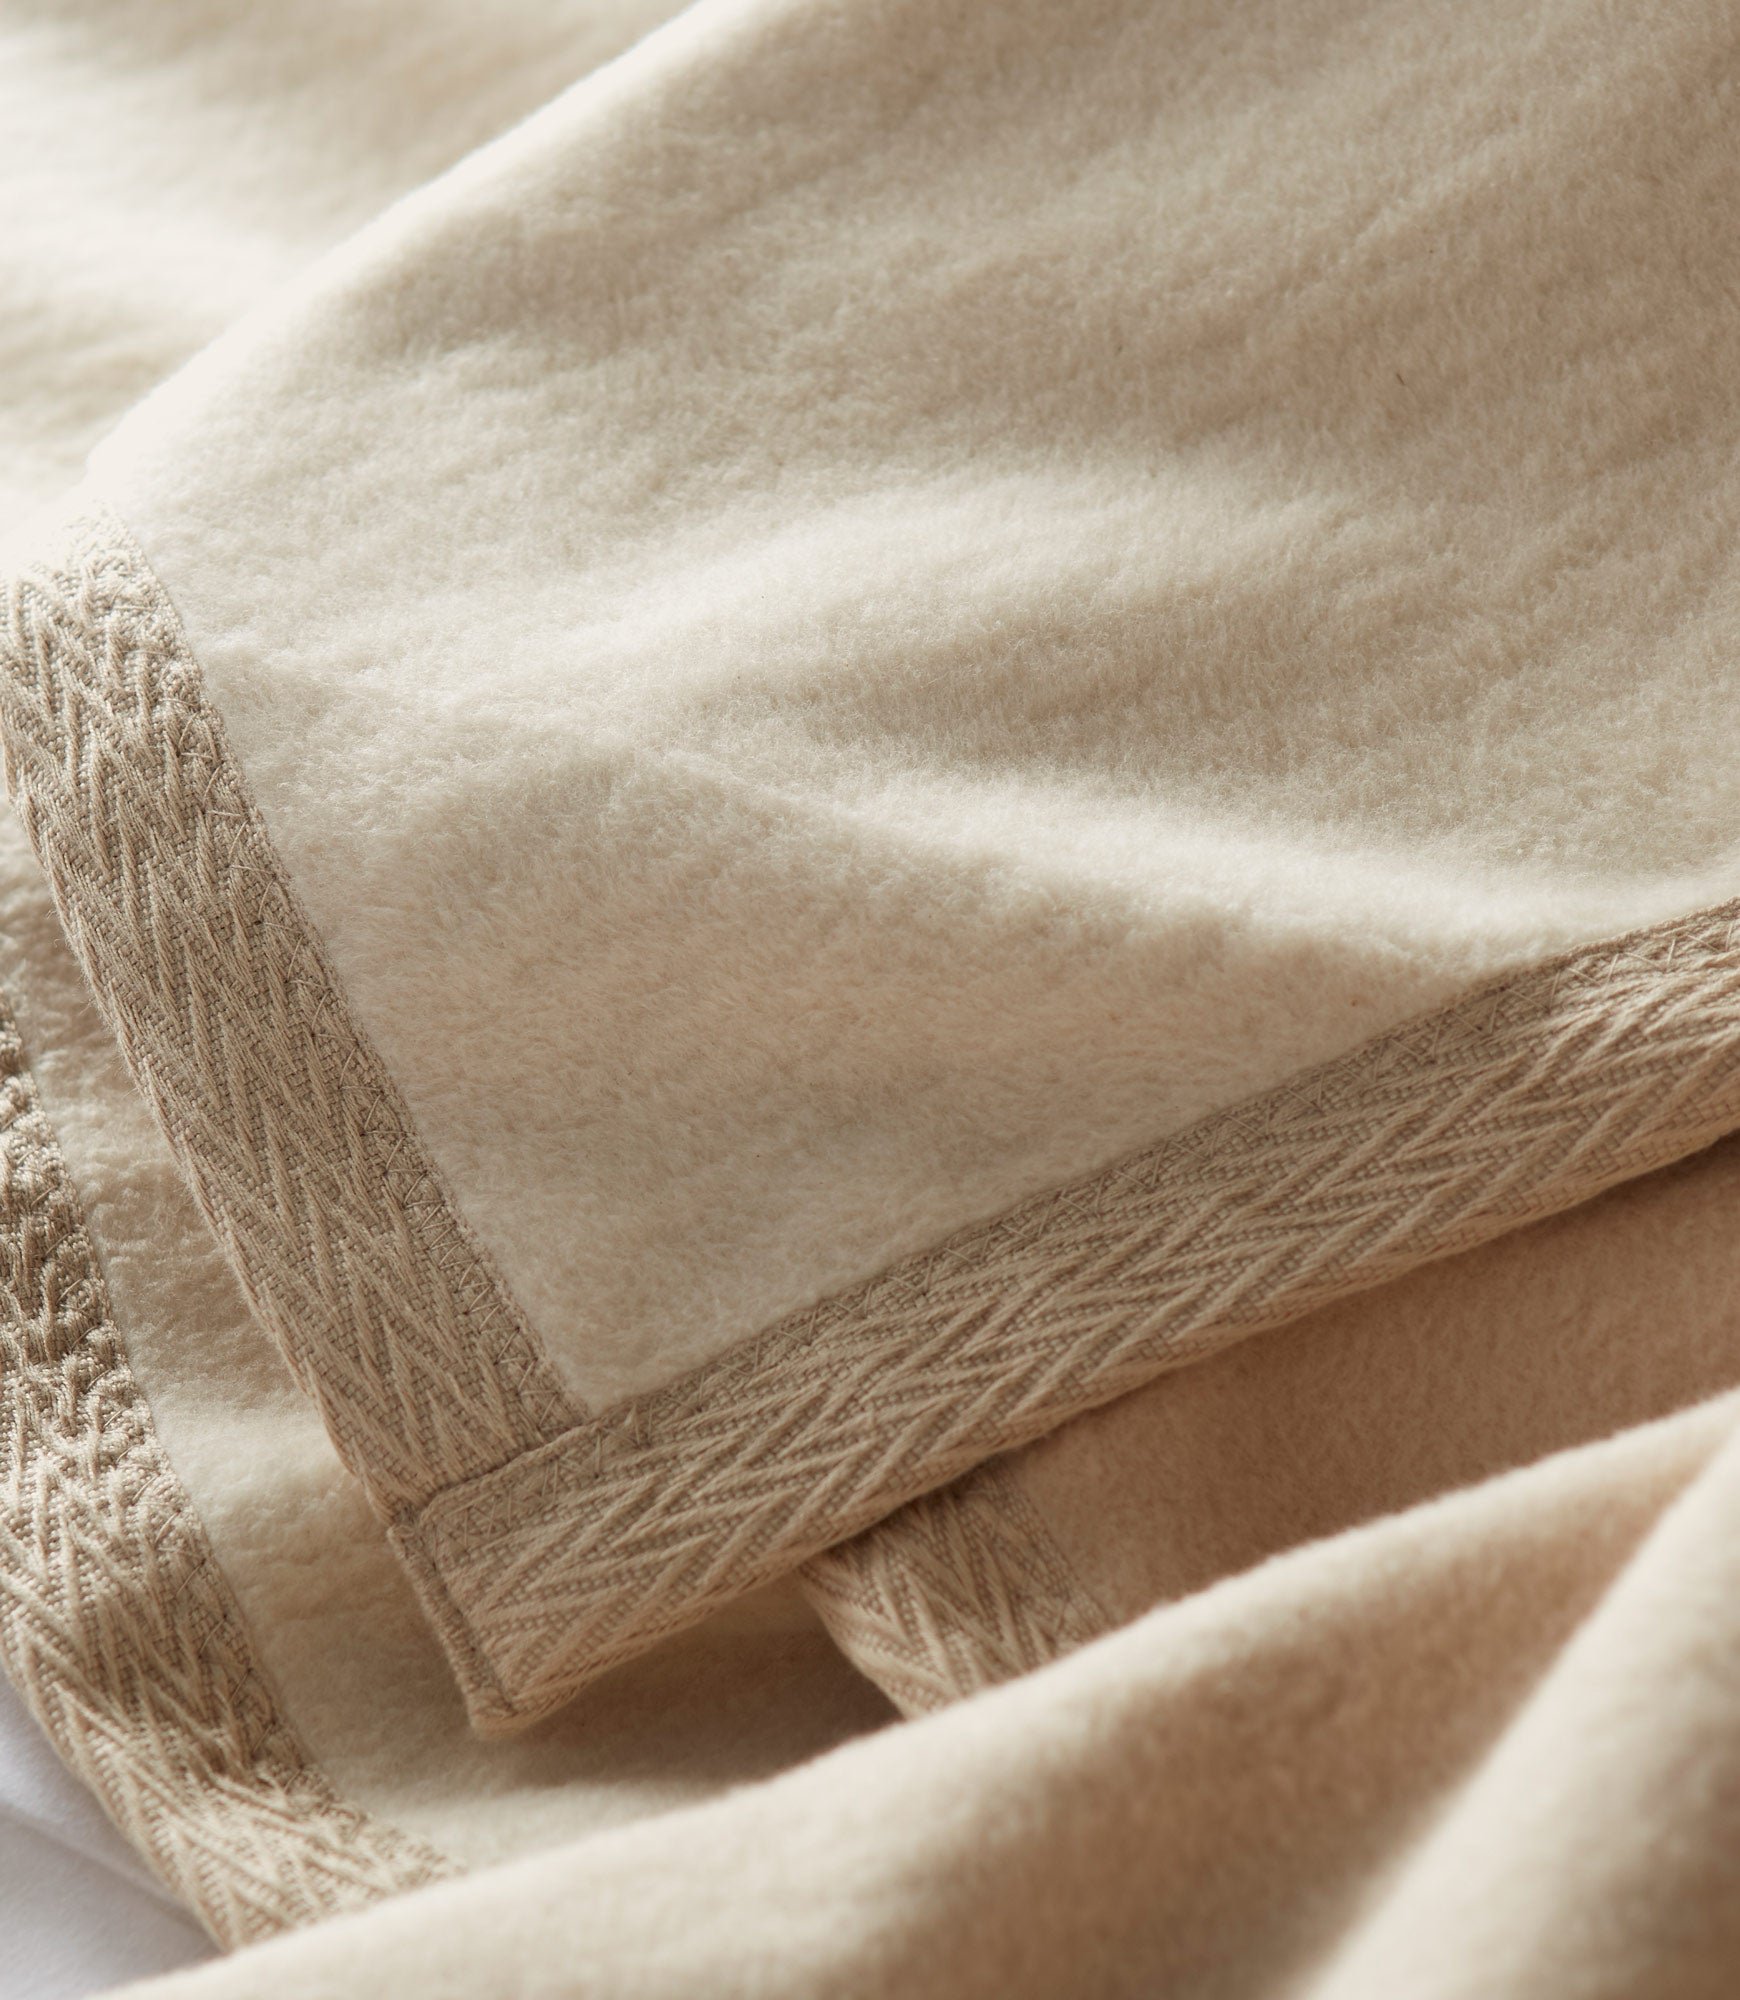 Binded corner detail of Favorite Reversible Cotton Blanket Linen color